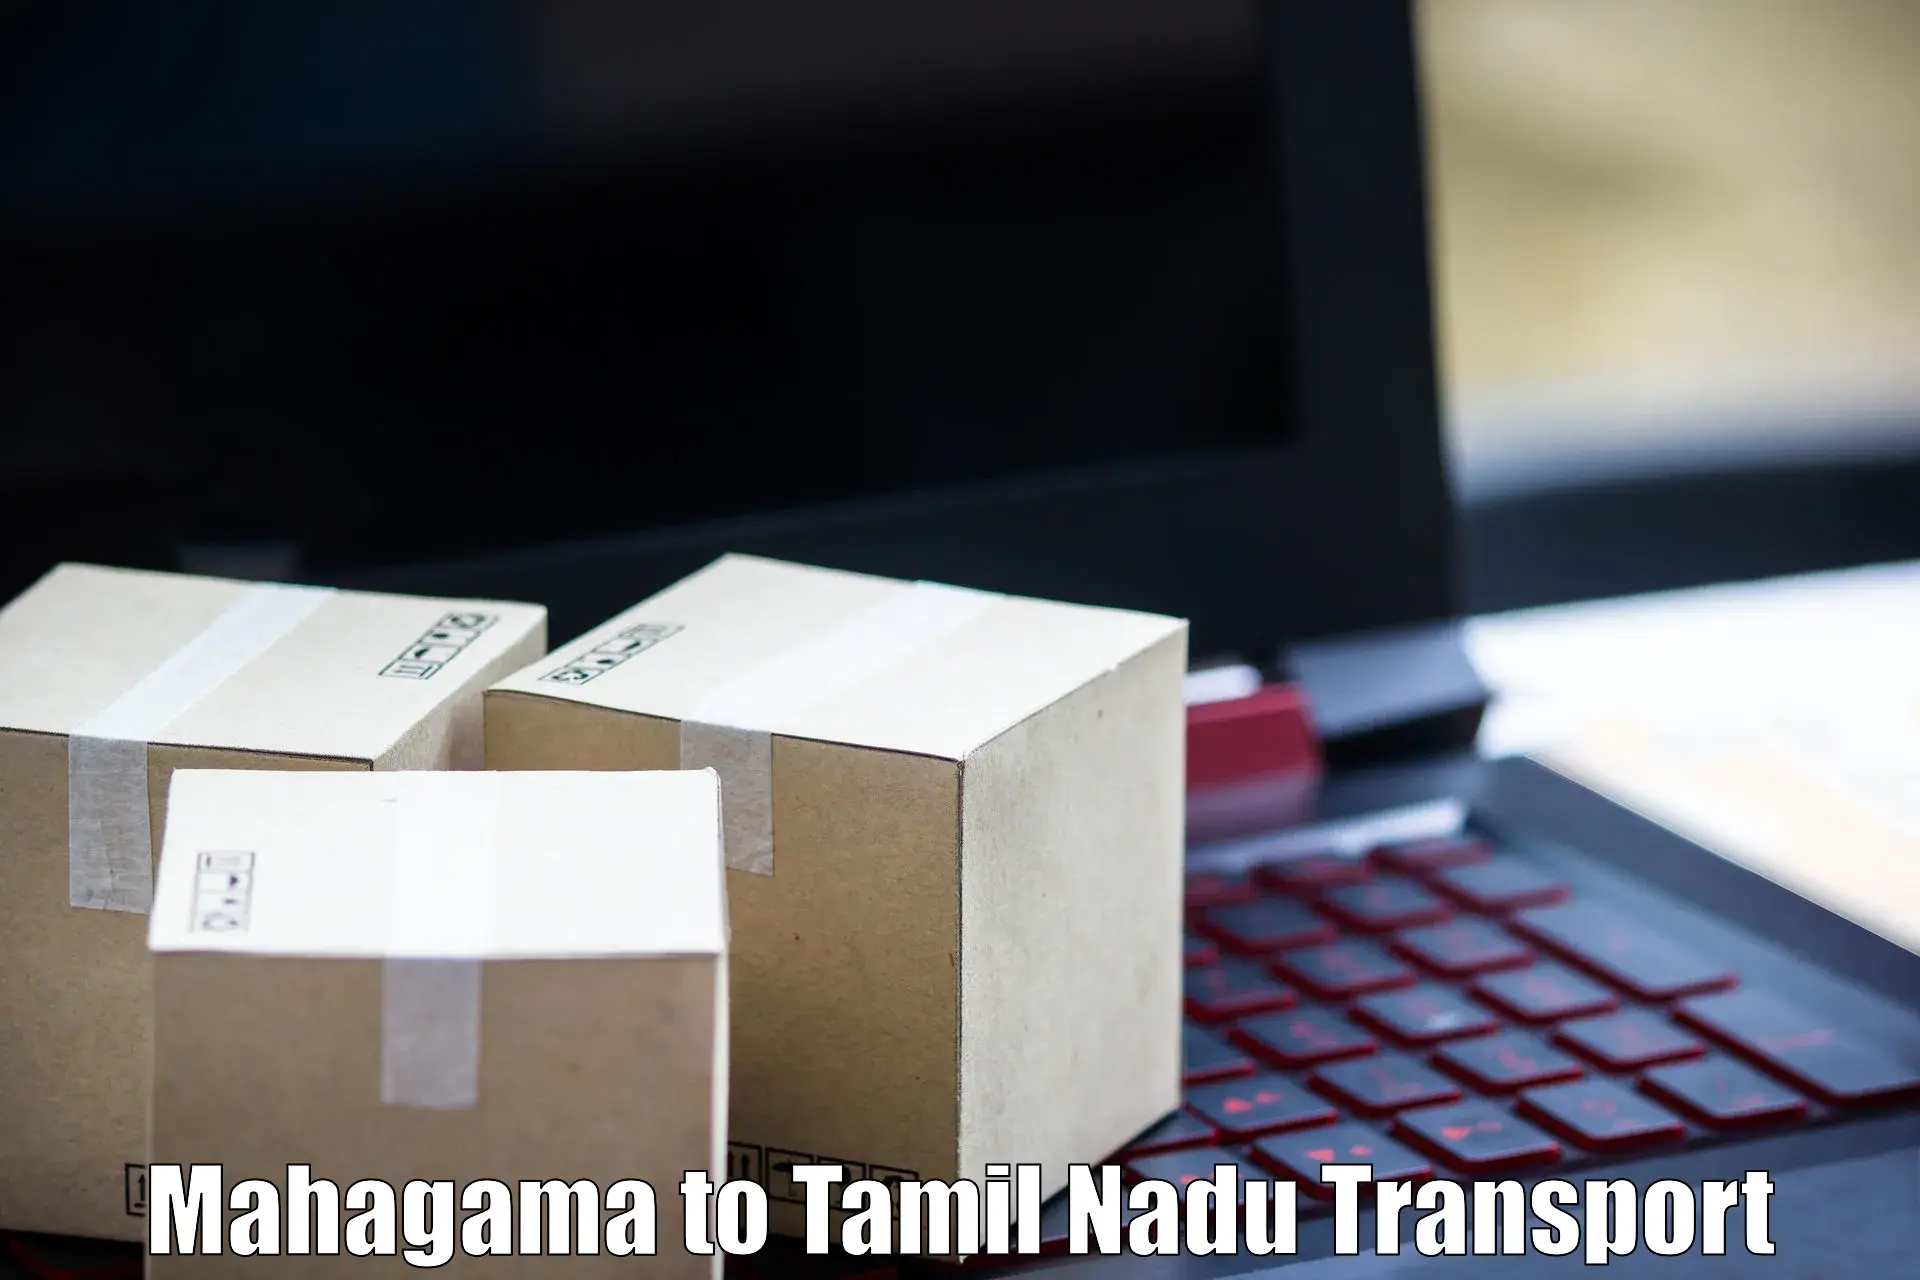 Daily transport service Mahagama to Maharajapuram